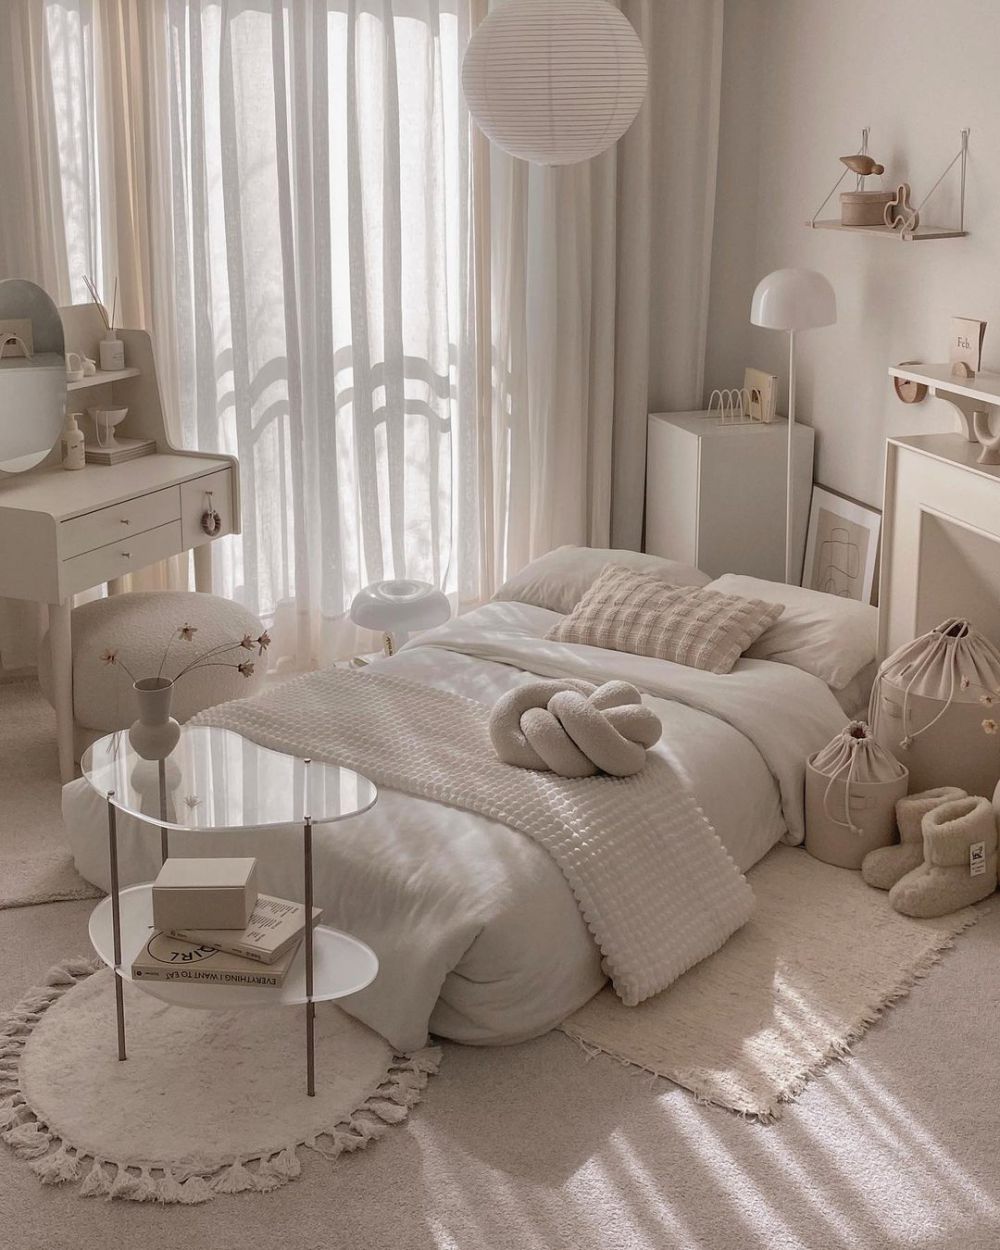 7 Ide Dekorasi Kamar Tidur yang Simpel Tapi Konten-able